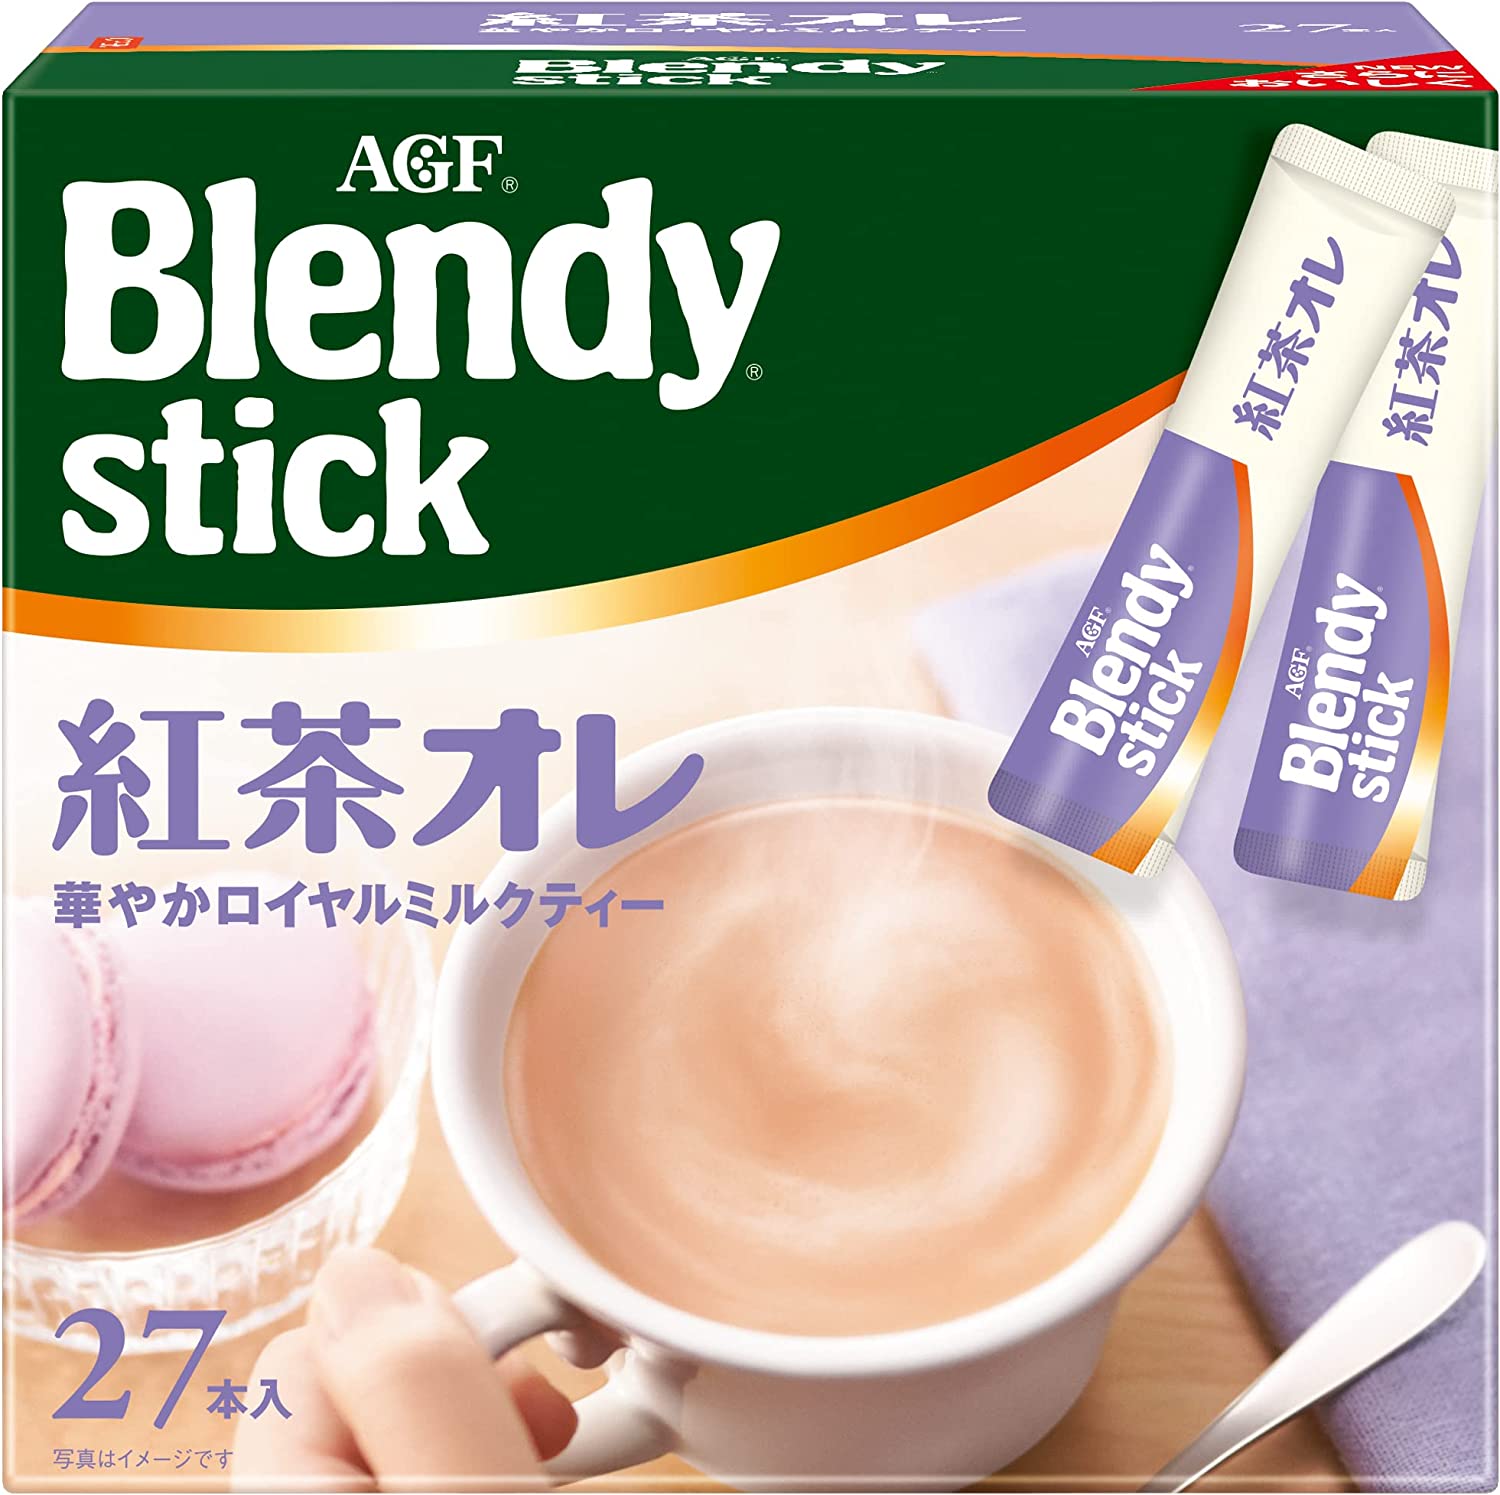 味之素AGF Blendy Ajinomoto Agf Brendy Stick Tea 27件